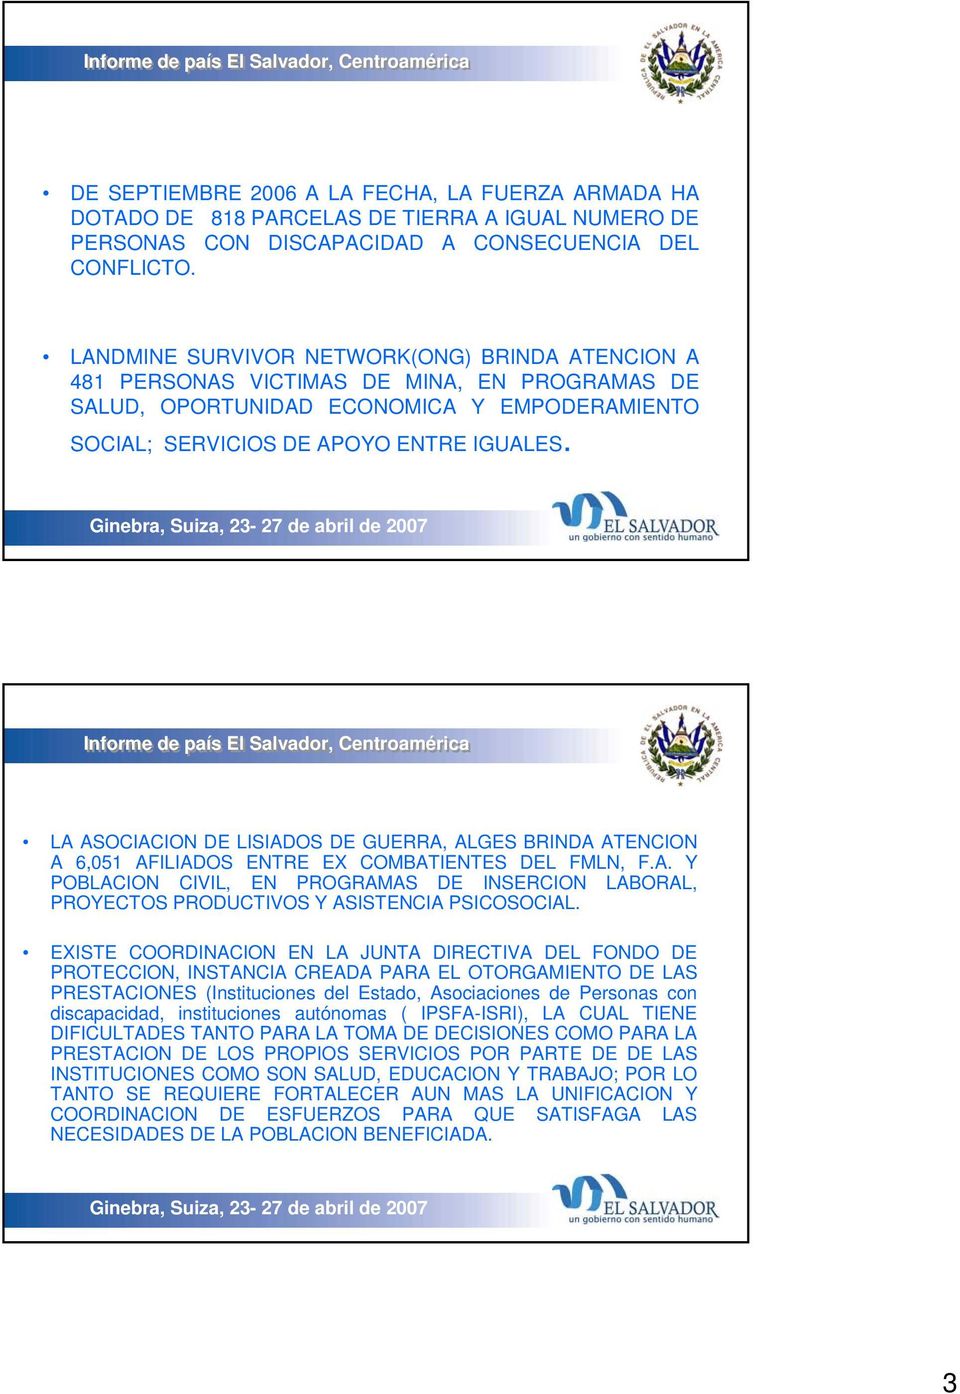 LA ASOCIACION DE LISIADOS DE GUERRA, ALGES BRINDA ATENCION A 6,051 AFILIADOS ENTRE EX COMBATIENTES DEL FMLN, F.A. Y POBLACION CIVIL, EN PROGRAMAS DE INSERCION LABORAL, PROYECTOS PRODUCTIVOS Y ASISTENCIA PSICOSOCIAL.